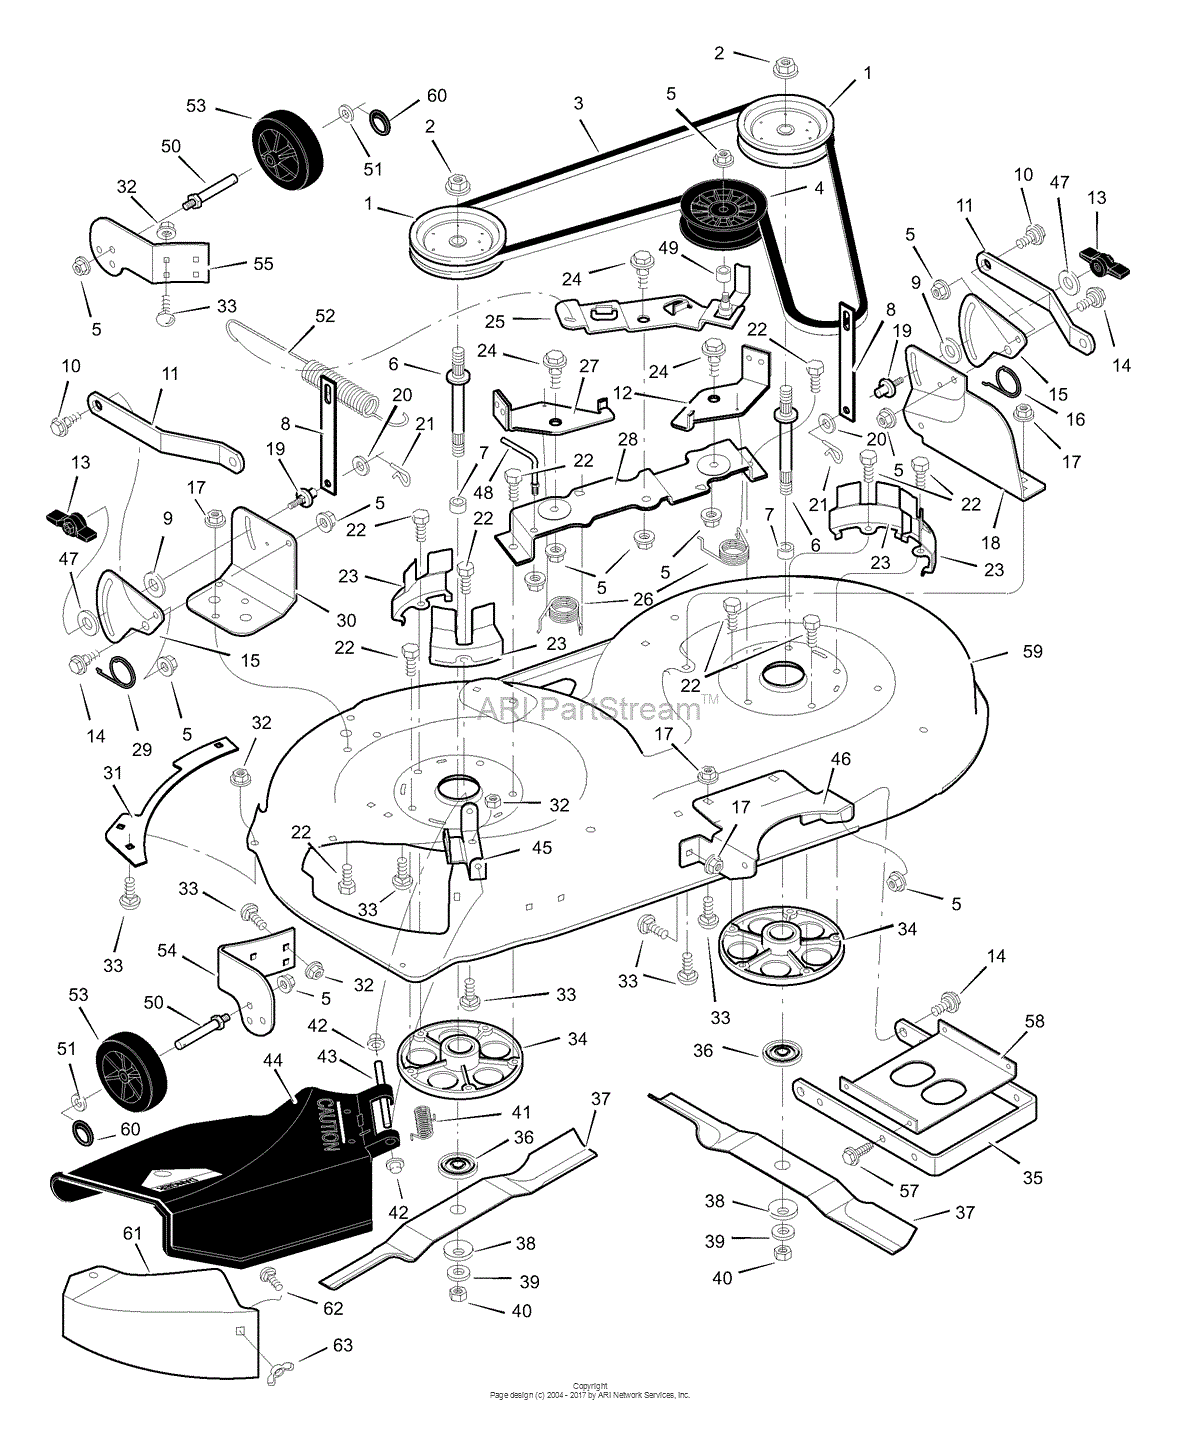 Murray Lawn Mower Carburetor Diagram Free Wiring Diagram